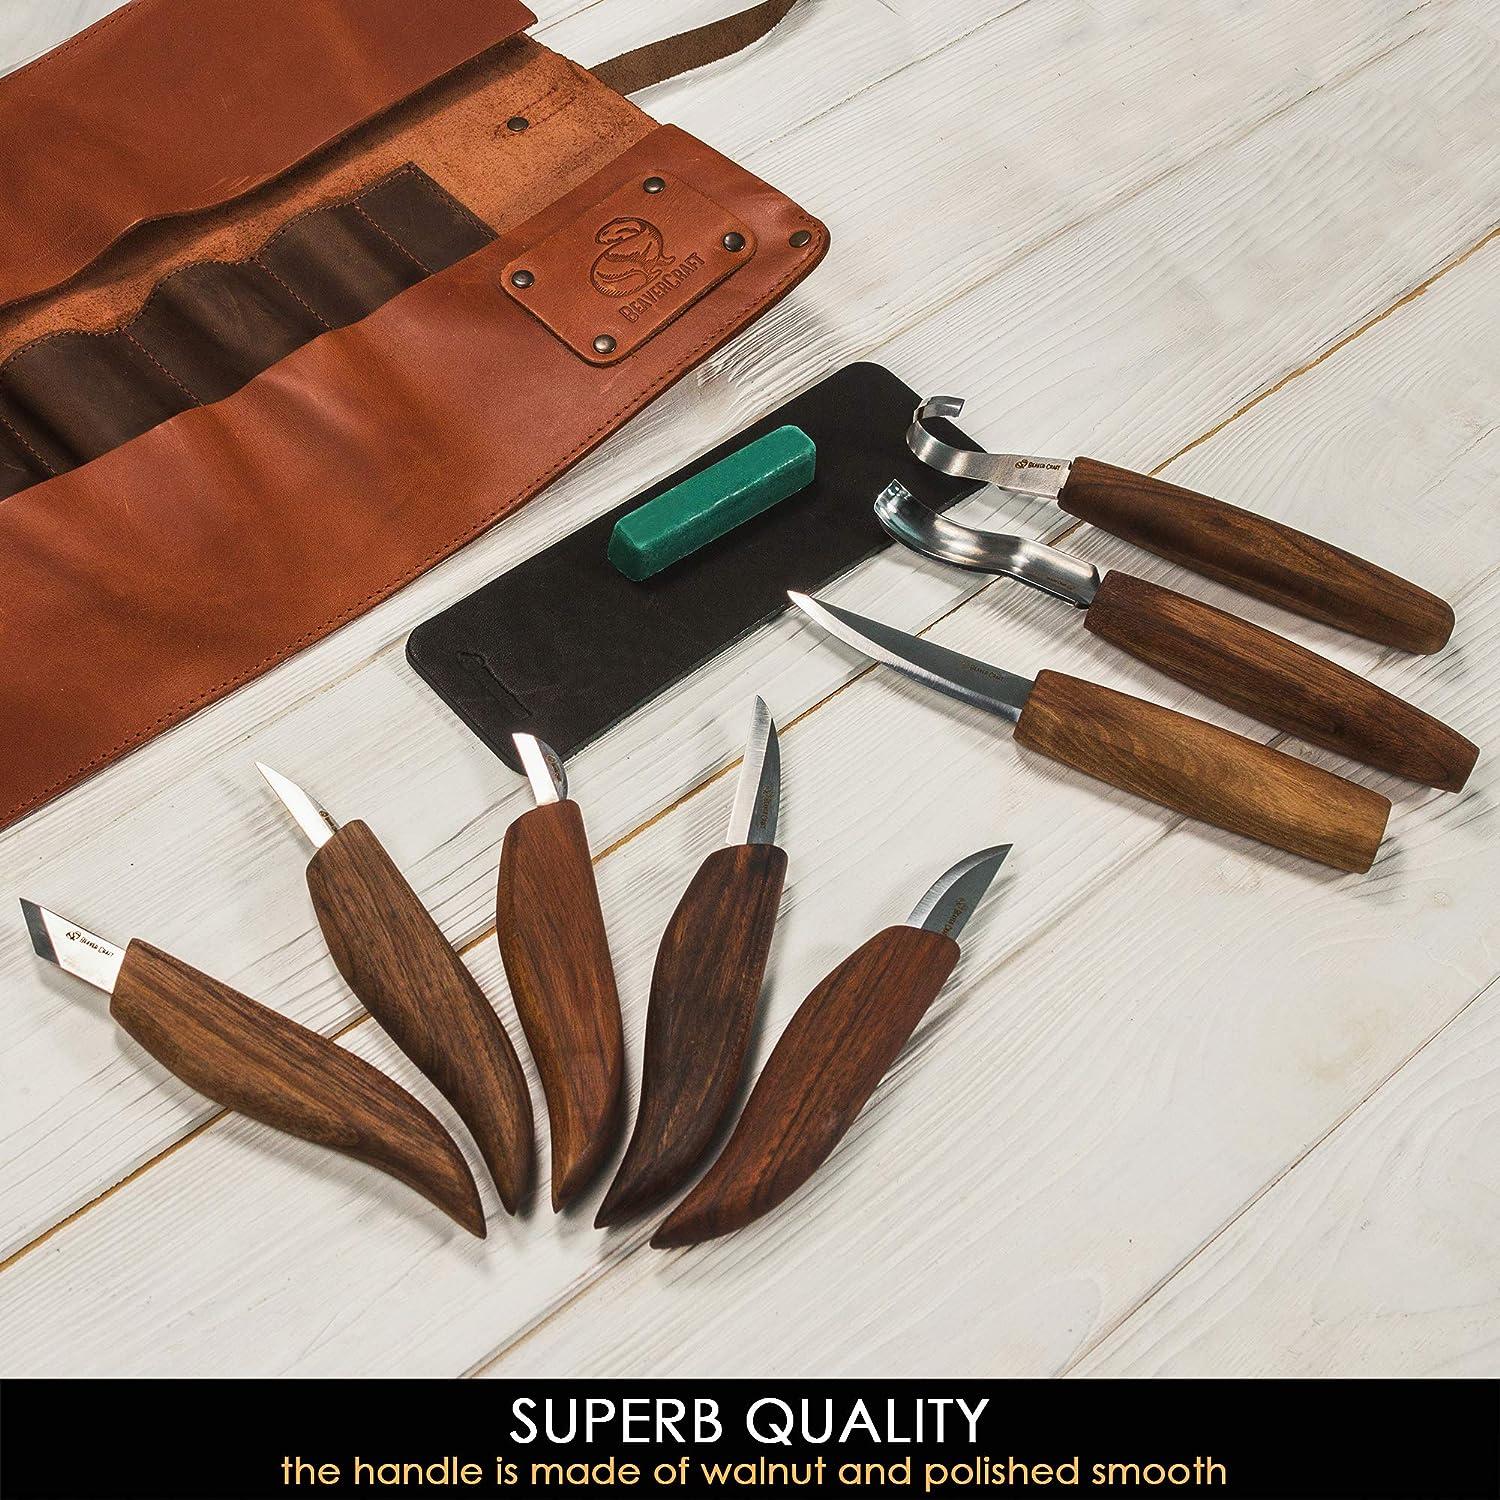 Wood Carving Tools 11 Pcs Wood Knife Kit Set Includes 4 Pcs Blocks